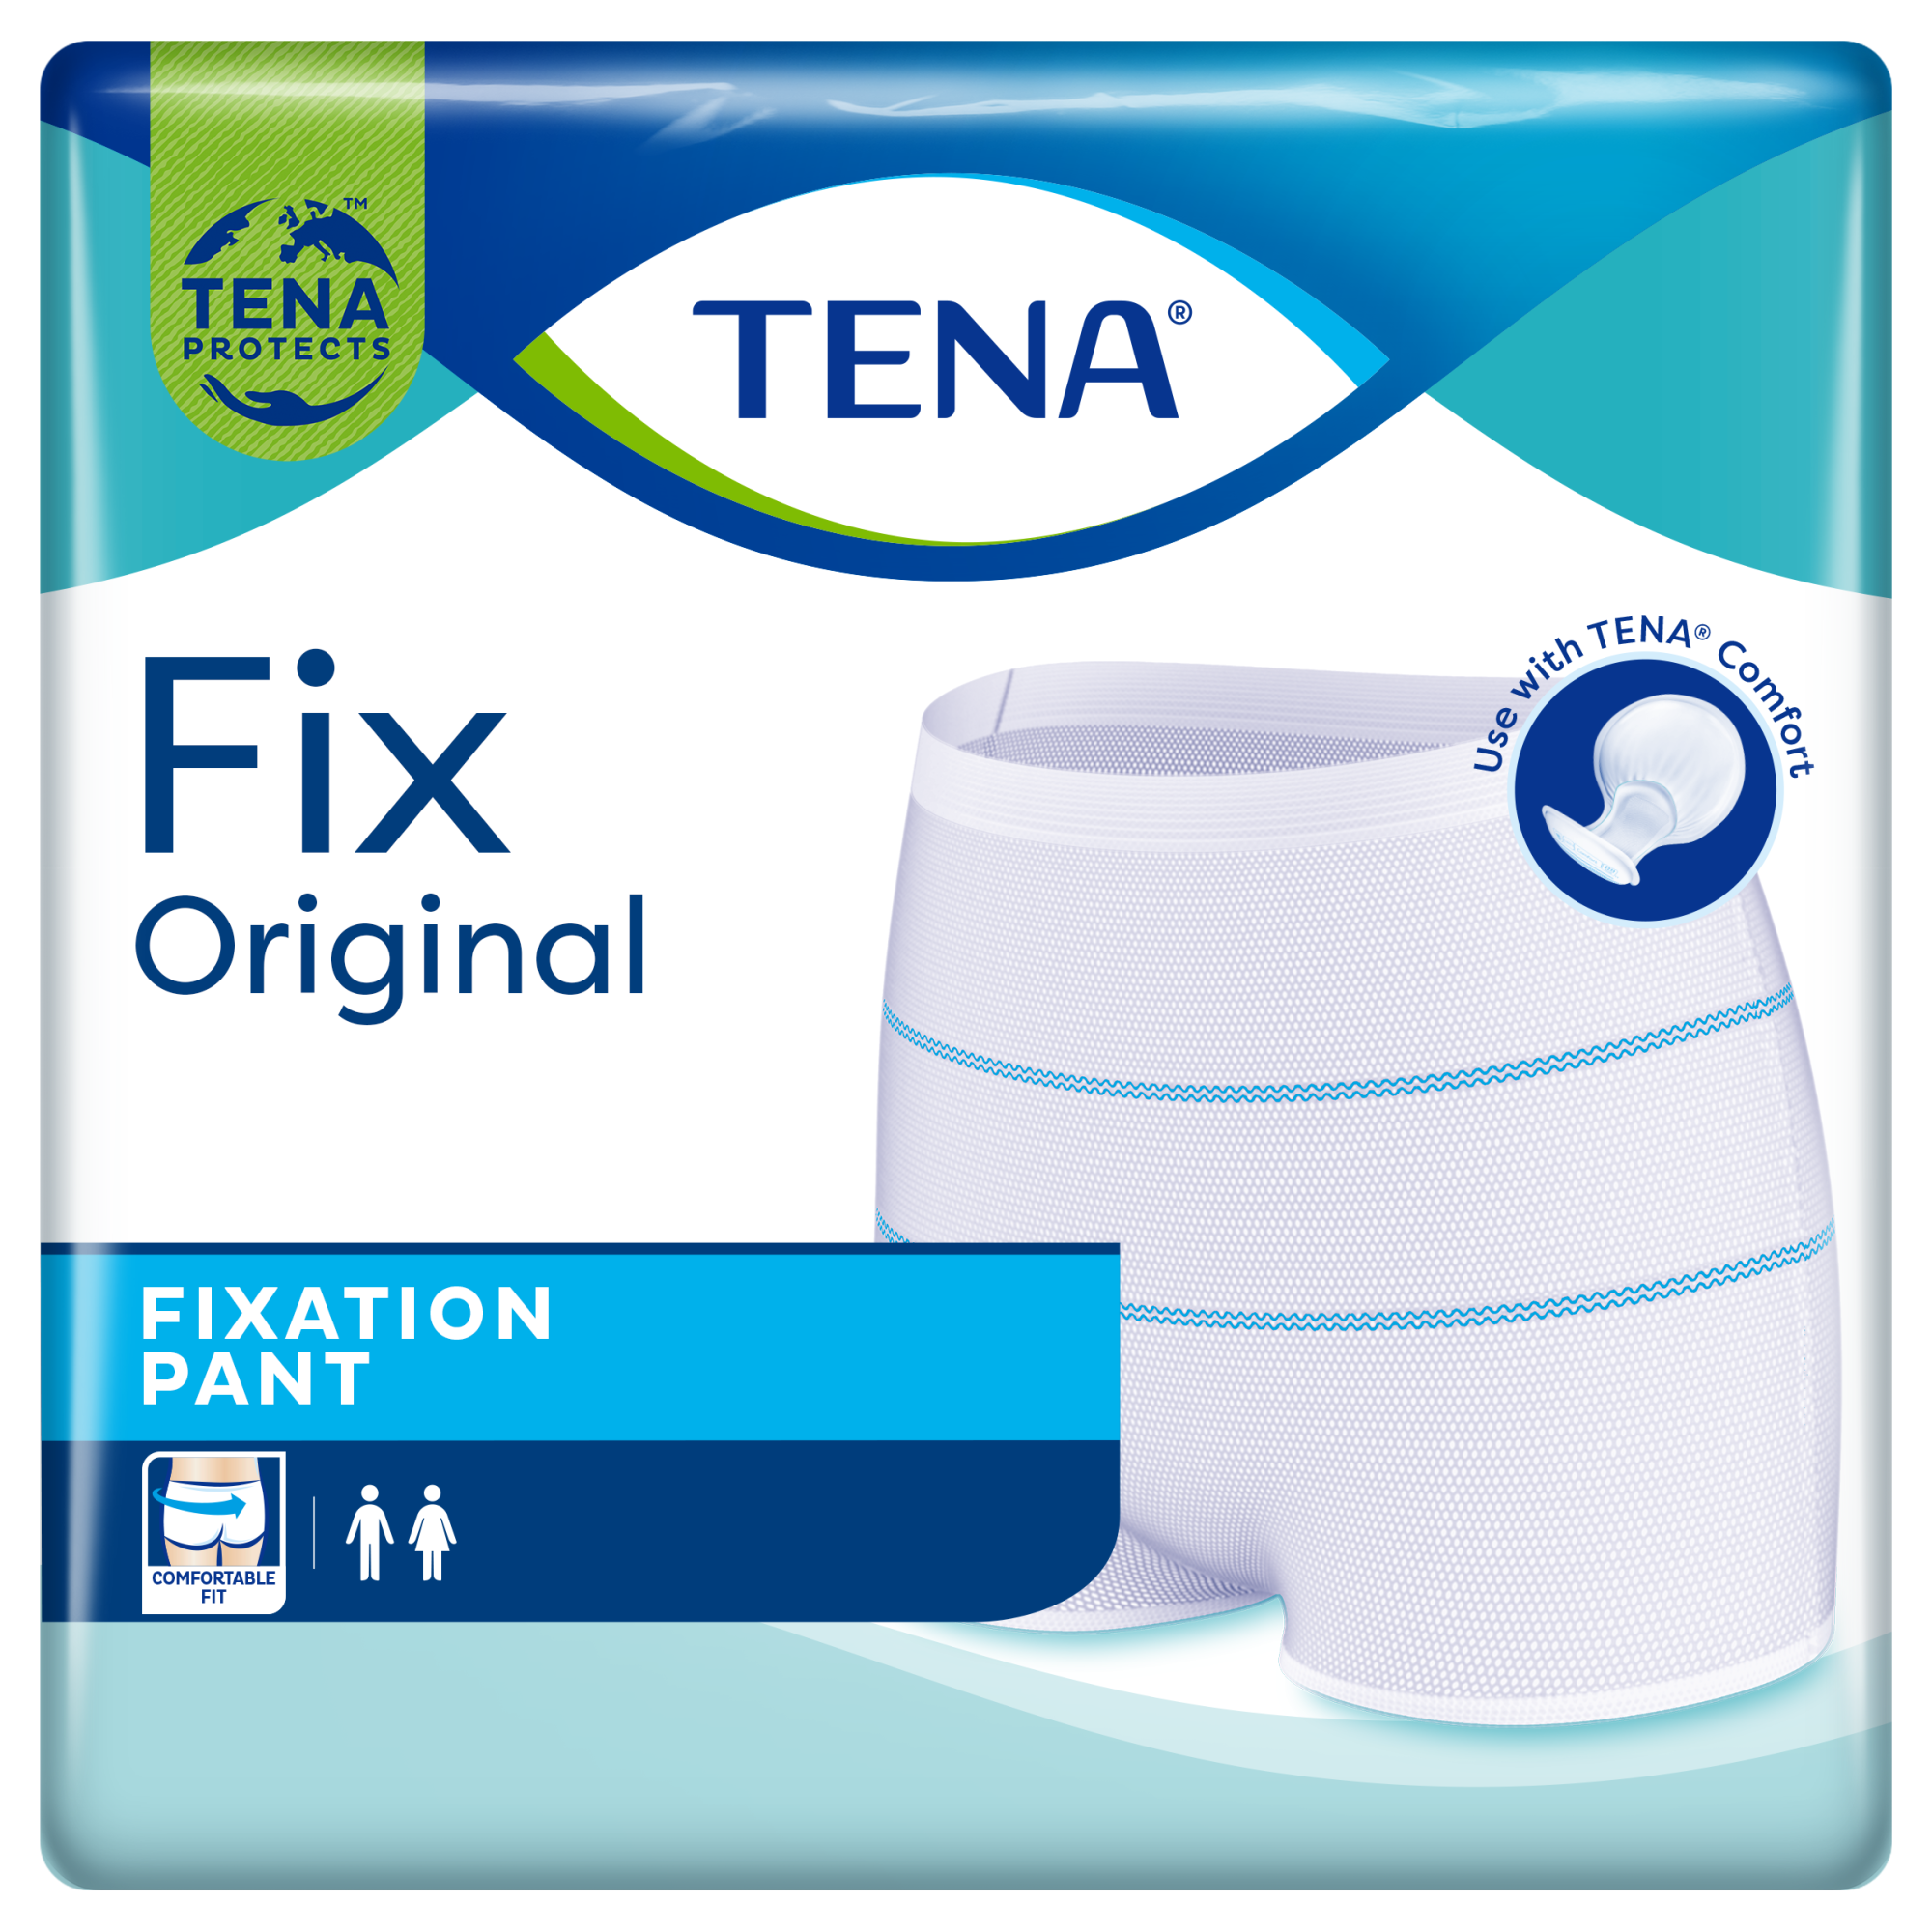 TENA Fix Original | Perive inkontinencijske gaćice za držanje velikih uložaka dizajna prilagođenog za oba spola